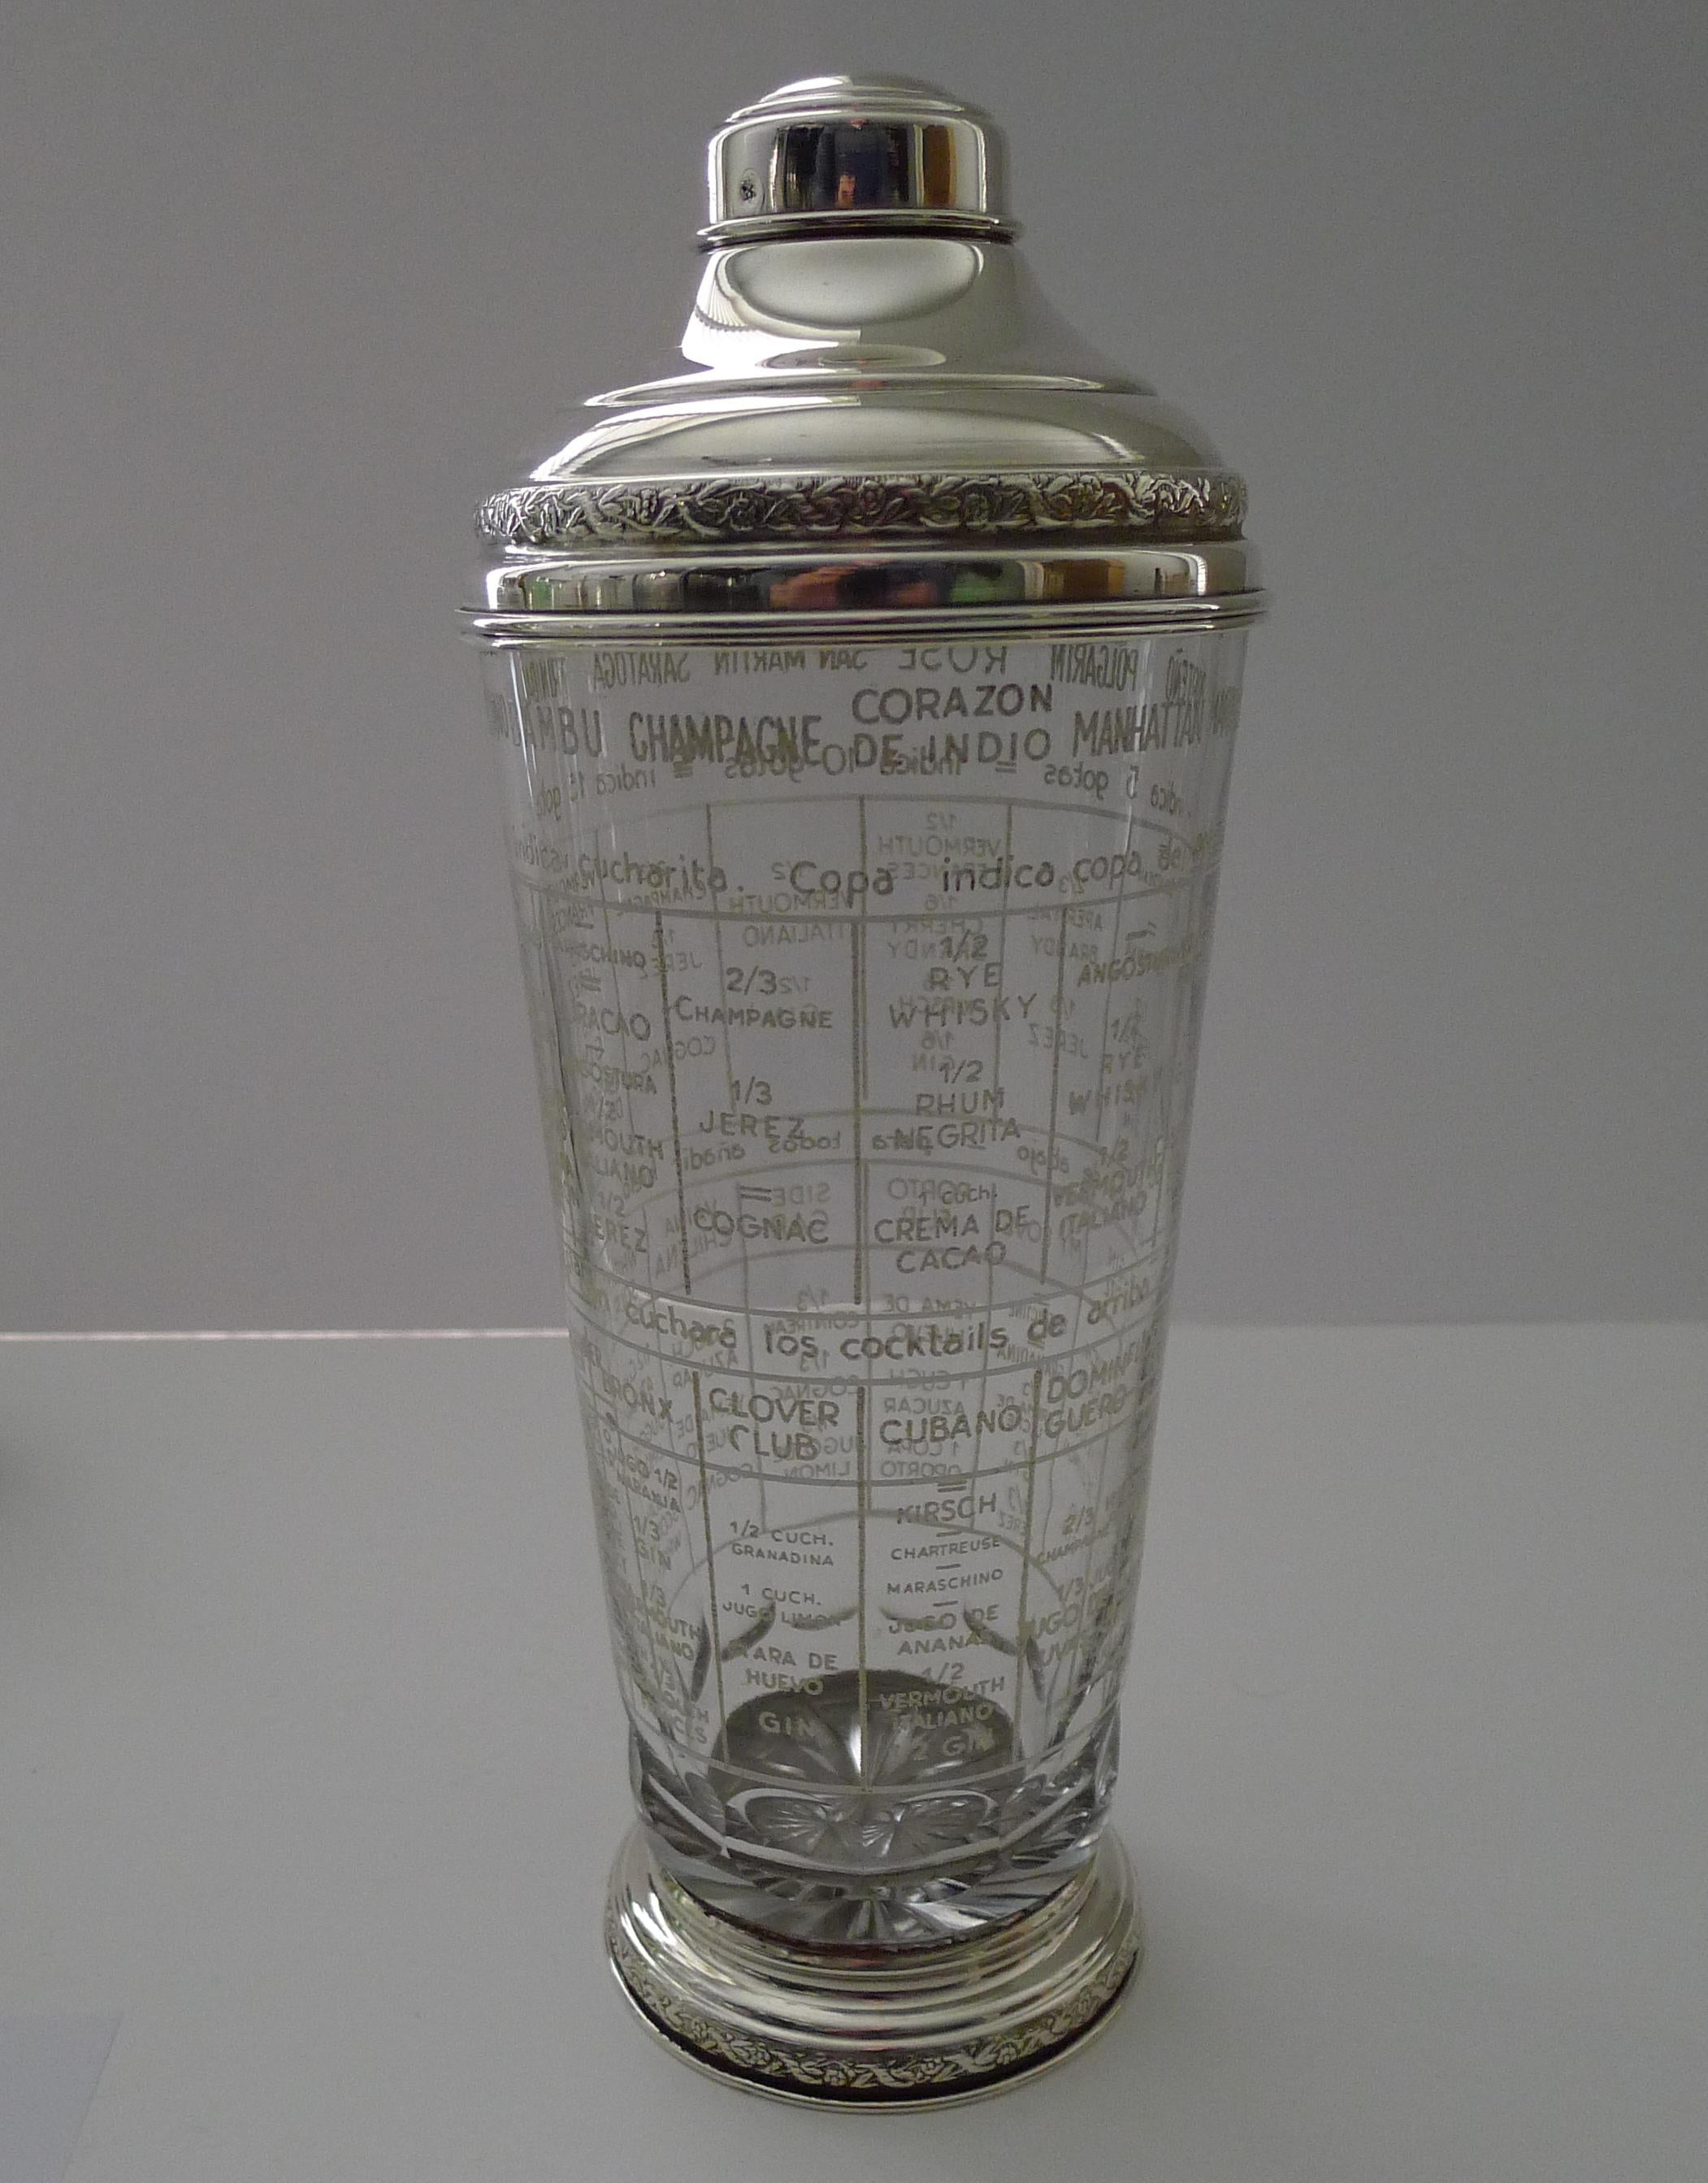 Ein prächtiger Vintage-Cocktail-Shaker aus Glas mit weißer Emaille-Beschriftung, die ein interessantes Rezept / Menü-Cocktail-Shaker.

Die Fassungen und Beschläge sind aus massivem spanischem Sterlingsilber gefertigt. Jedes Stück ist mit dem